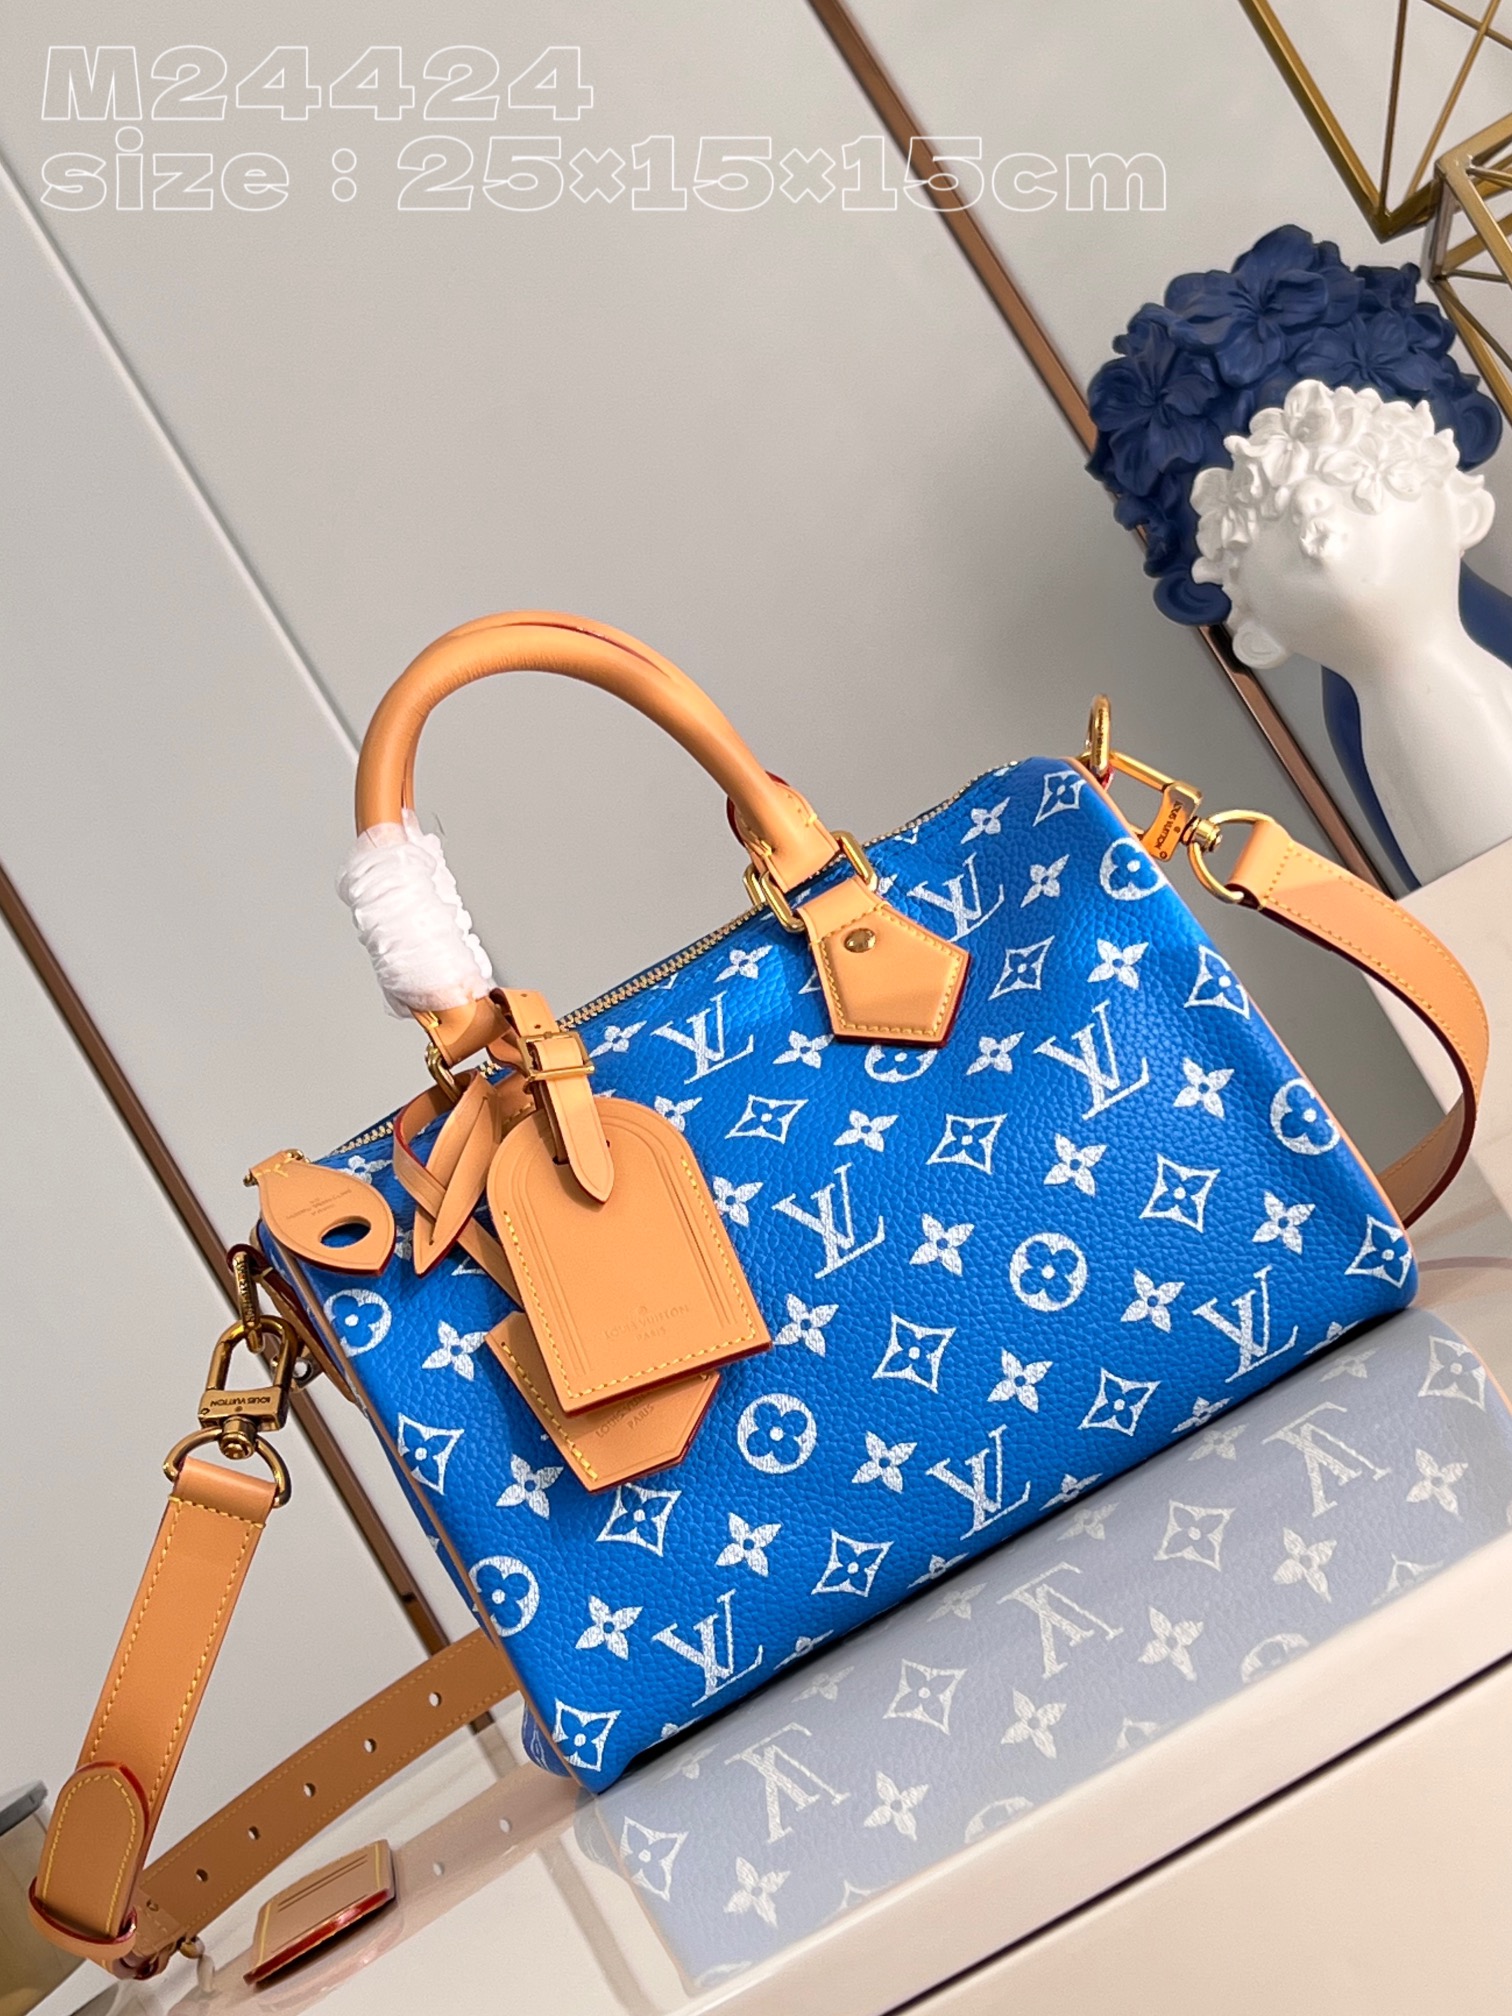 High Quality Designer
 Louis Vuitton LV Speedy AAAA
 Bags Handbags Blue Polishing Canvas Cowhide Sheepskin M24424